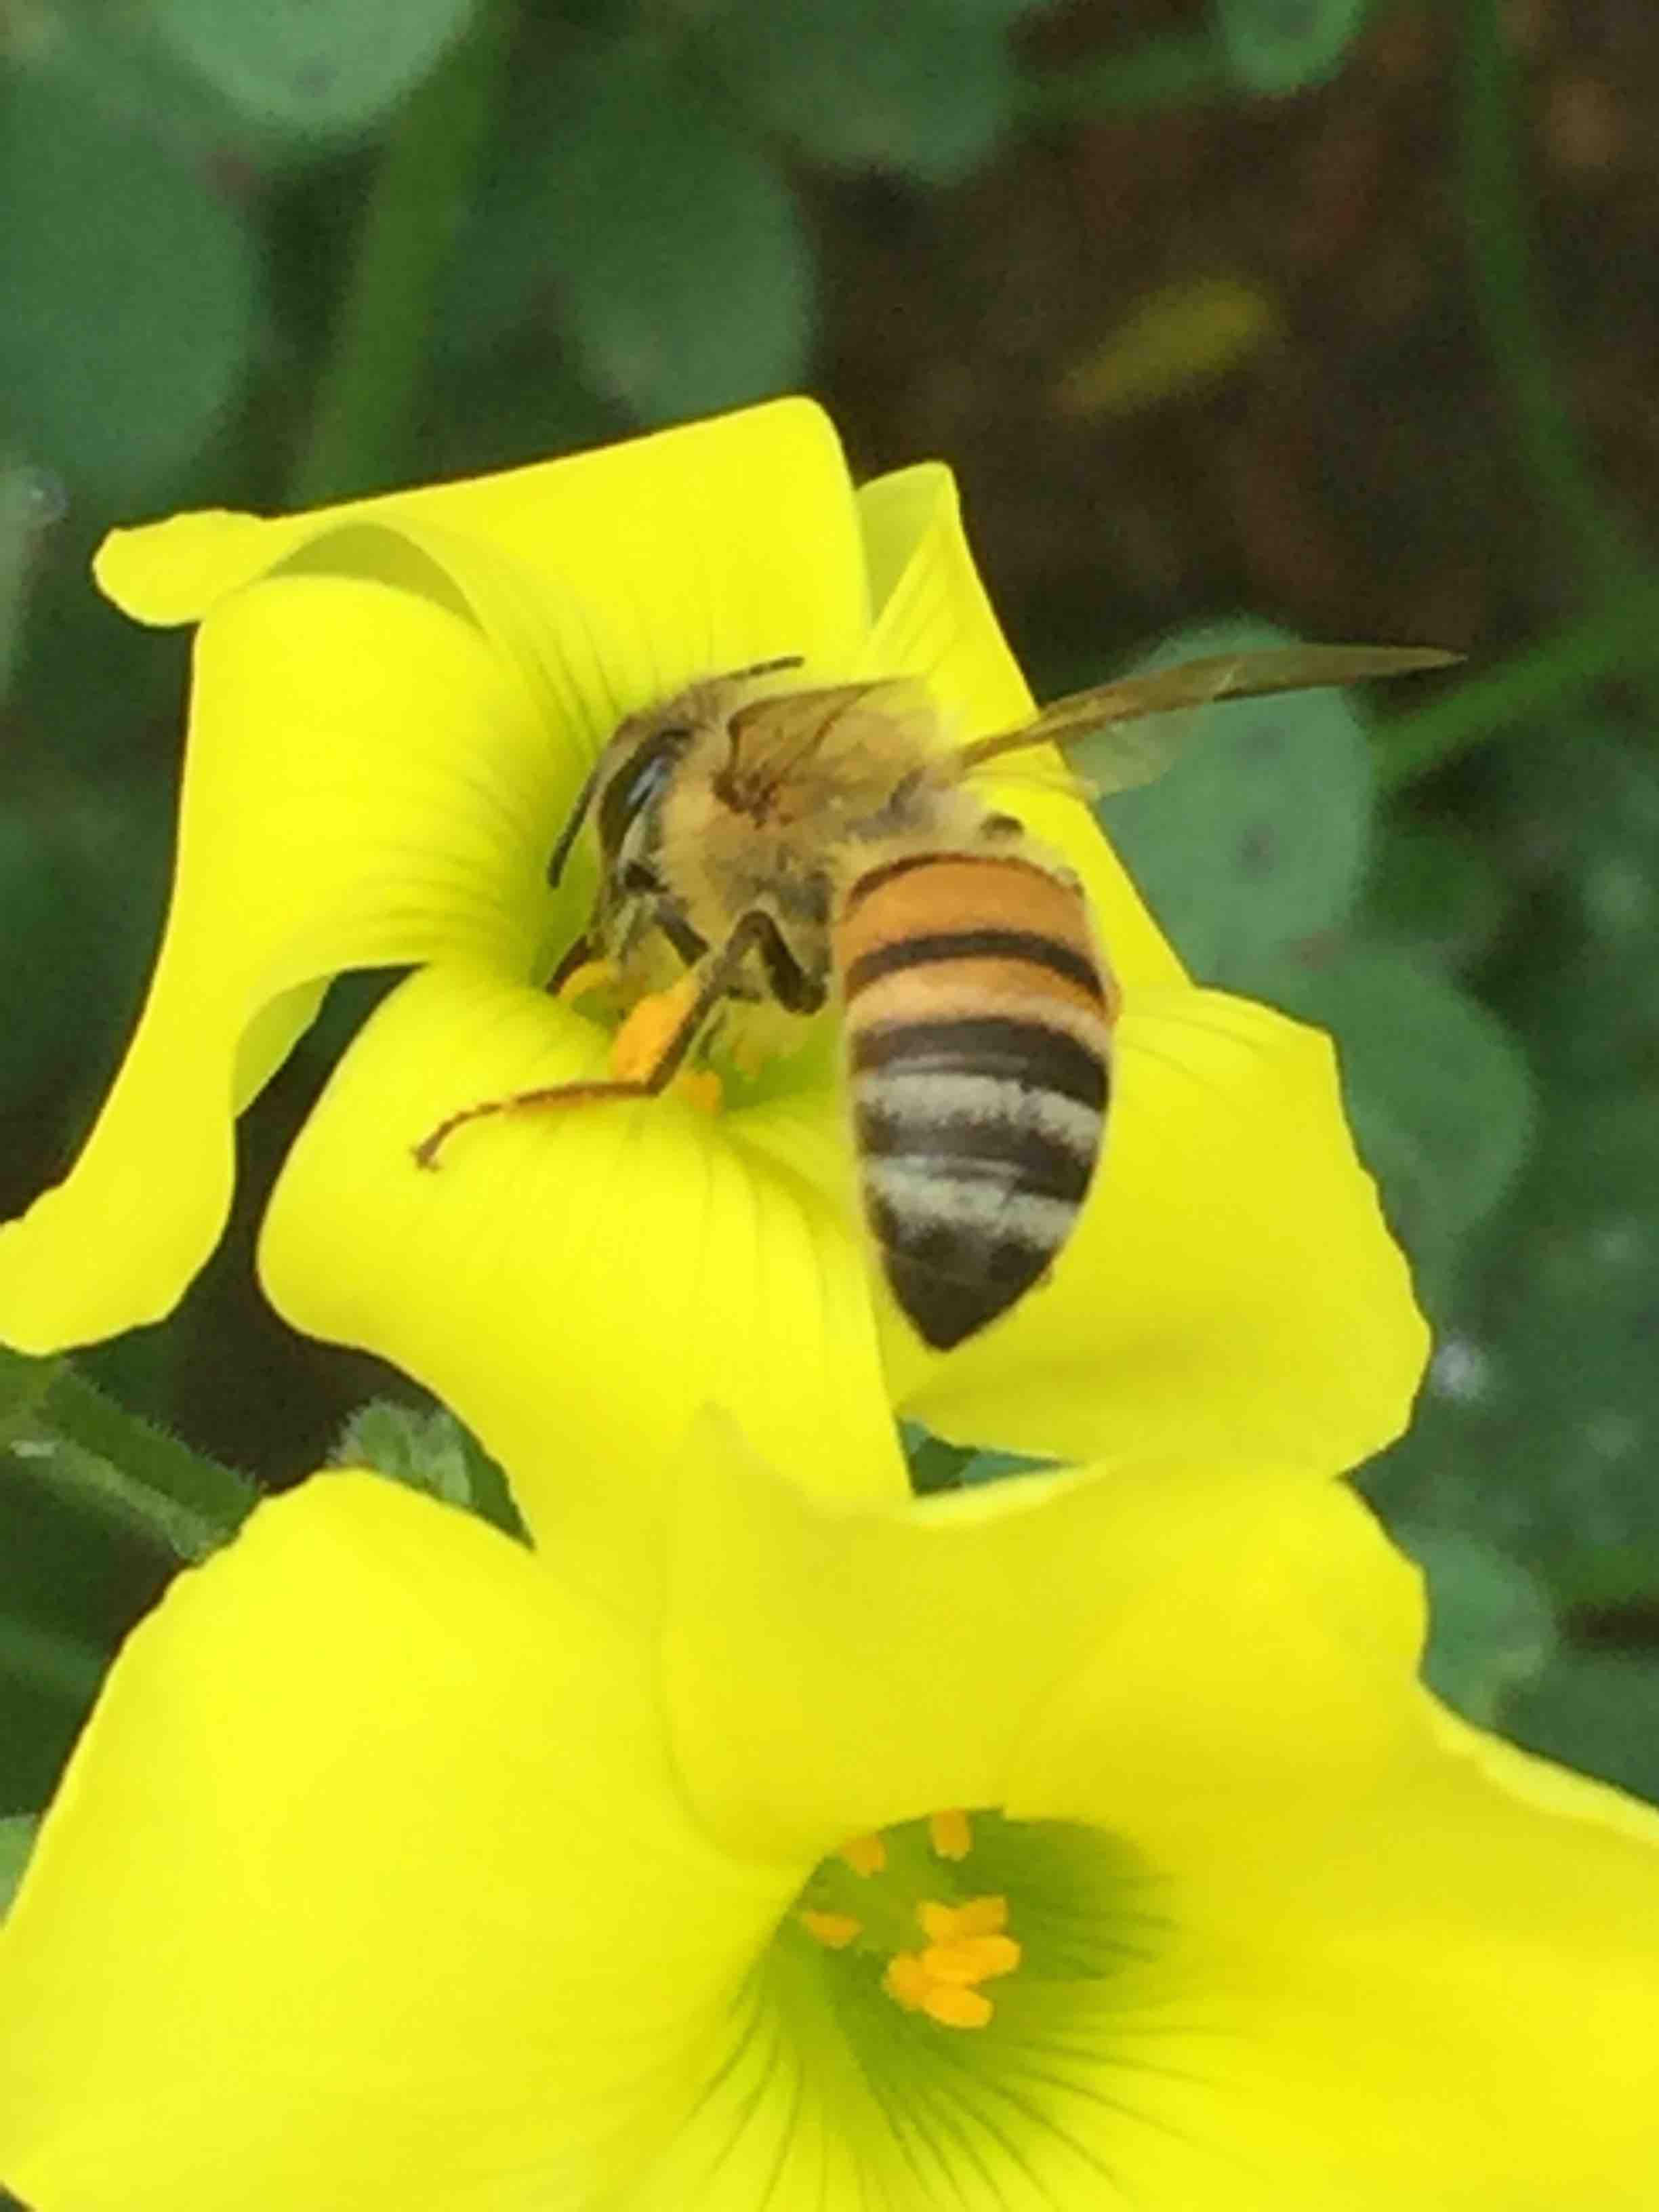 Bees - worker bee collecting pollen